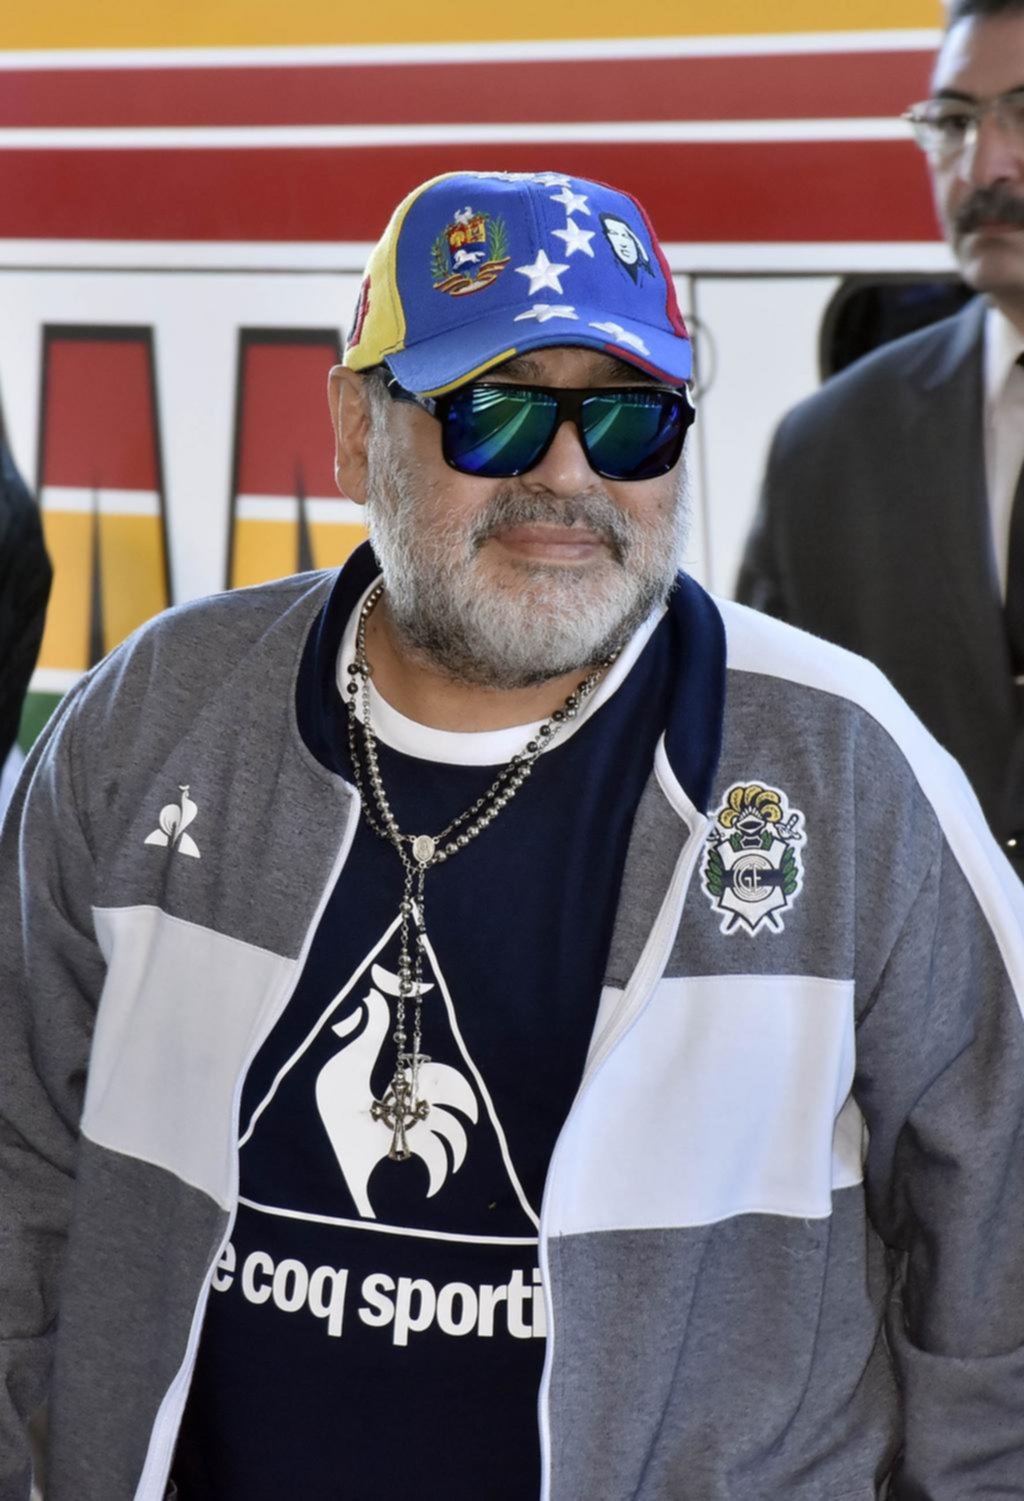 El remate de Maradona: con atención mundial pero con muy pocas ofertas